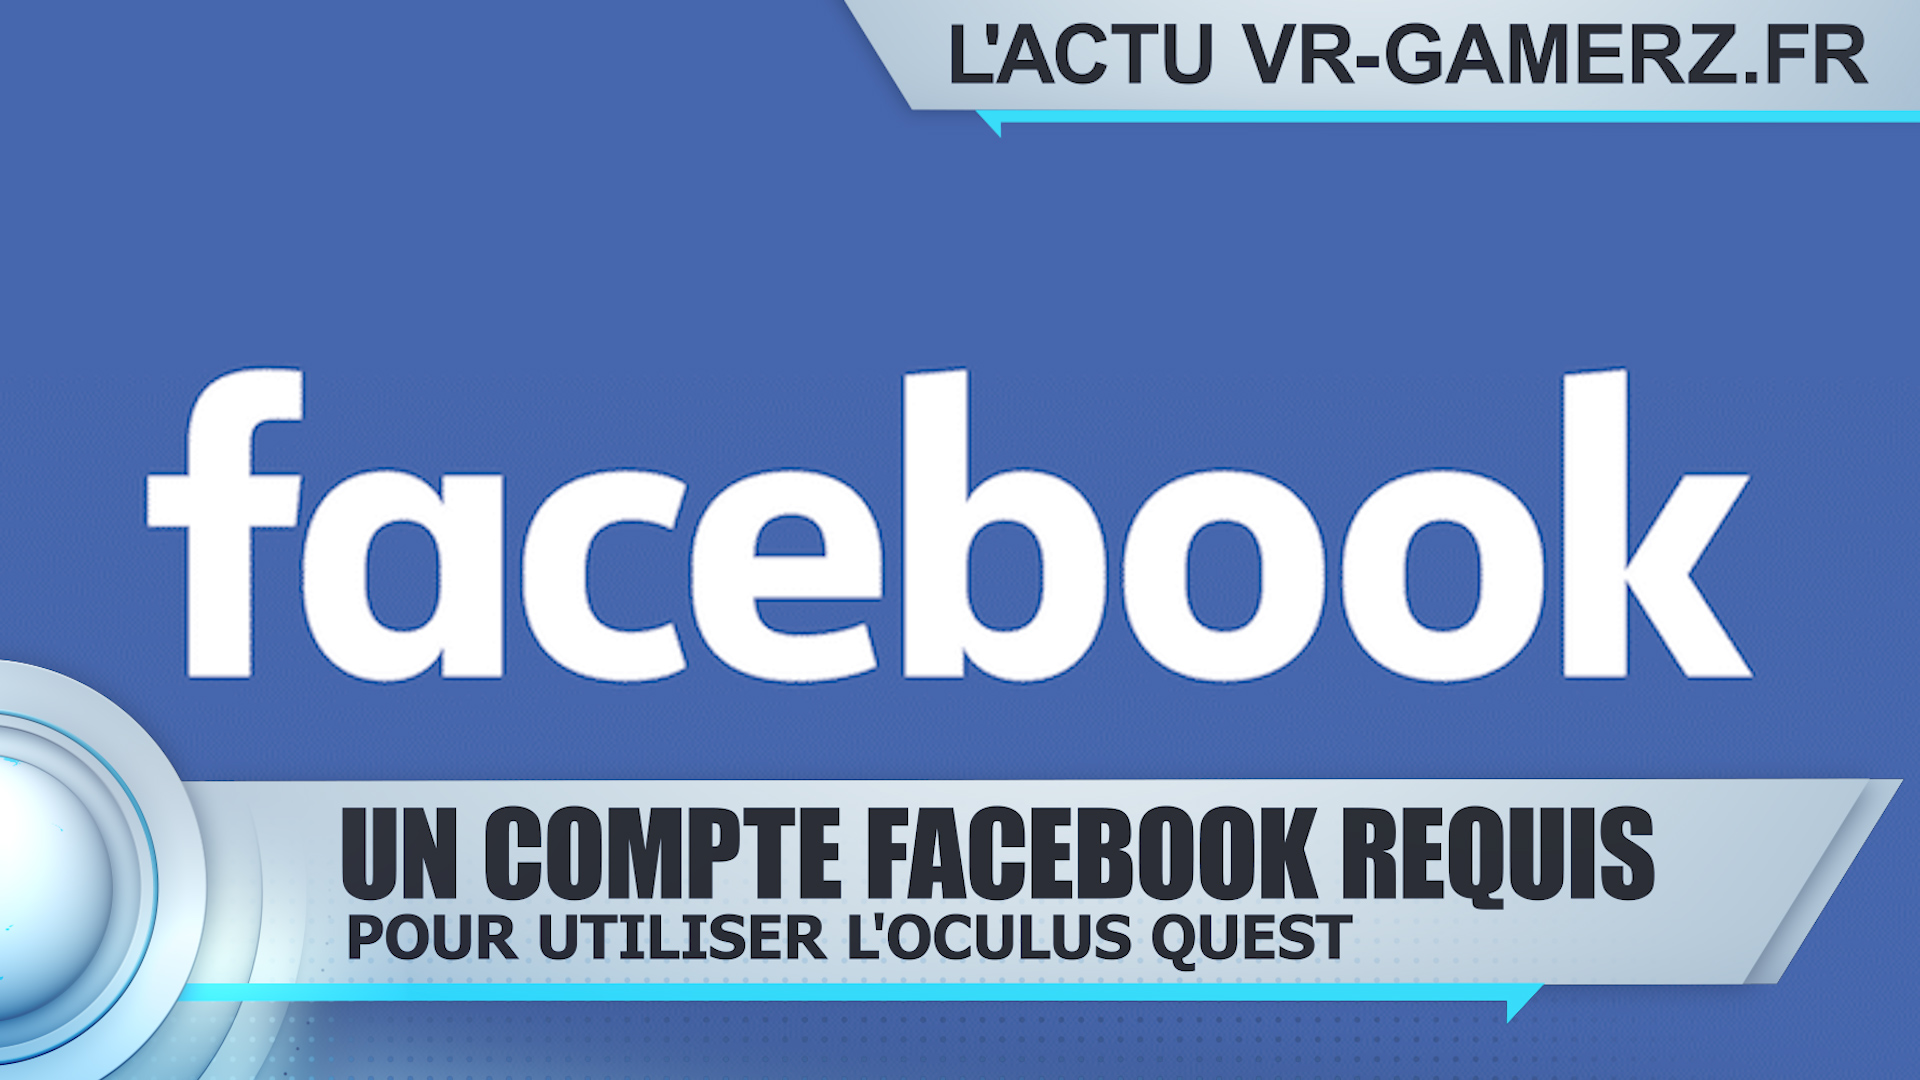 Le compte Facebook va devenir obligatoire sur les produits Oculus